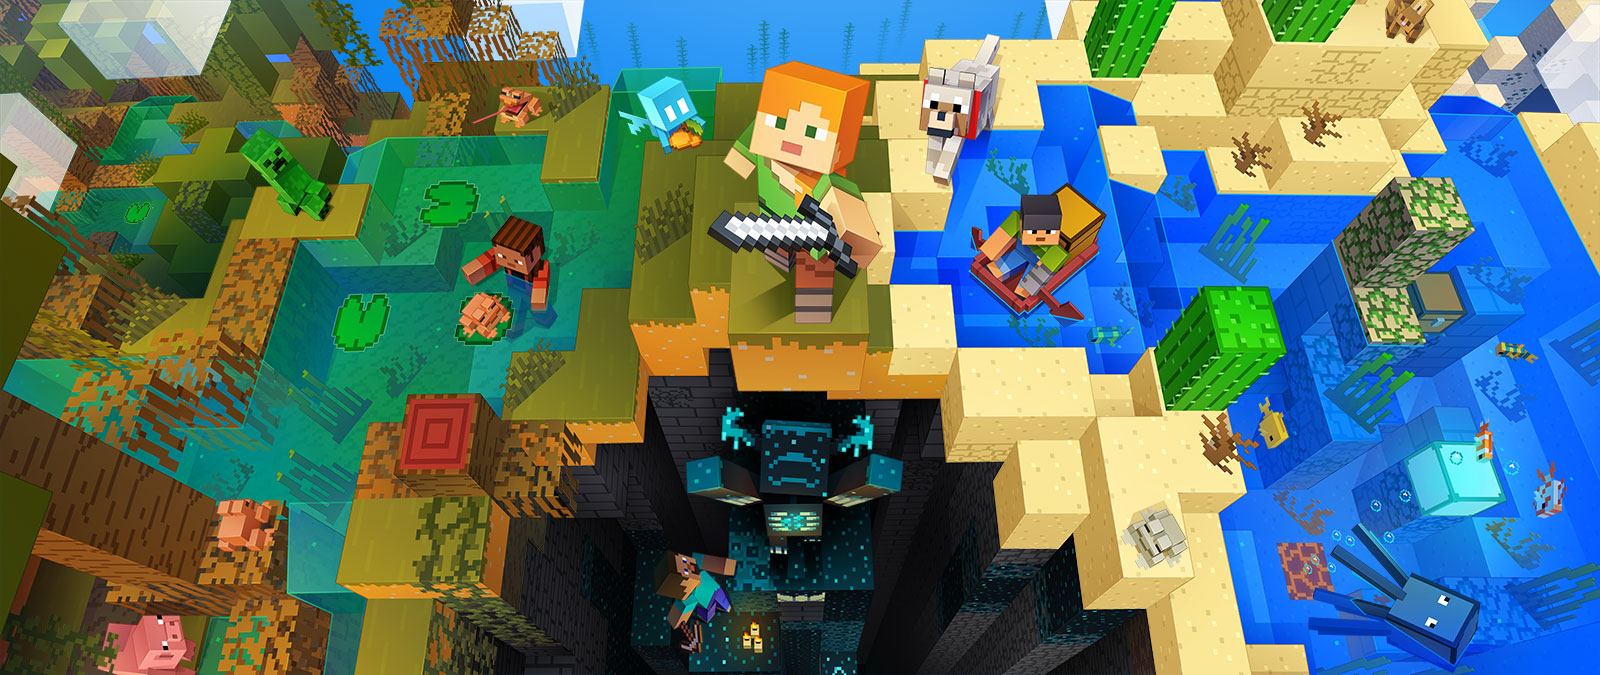 Персонажи из видеоигры Minecraft, занимающиеся различными видами деятельности в Minecraft